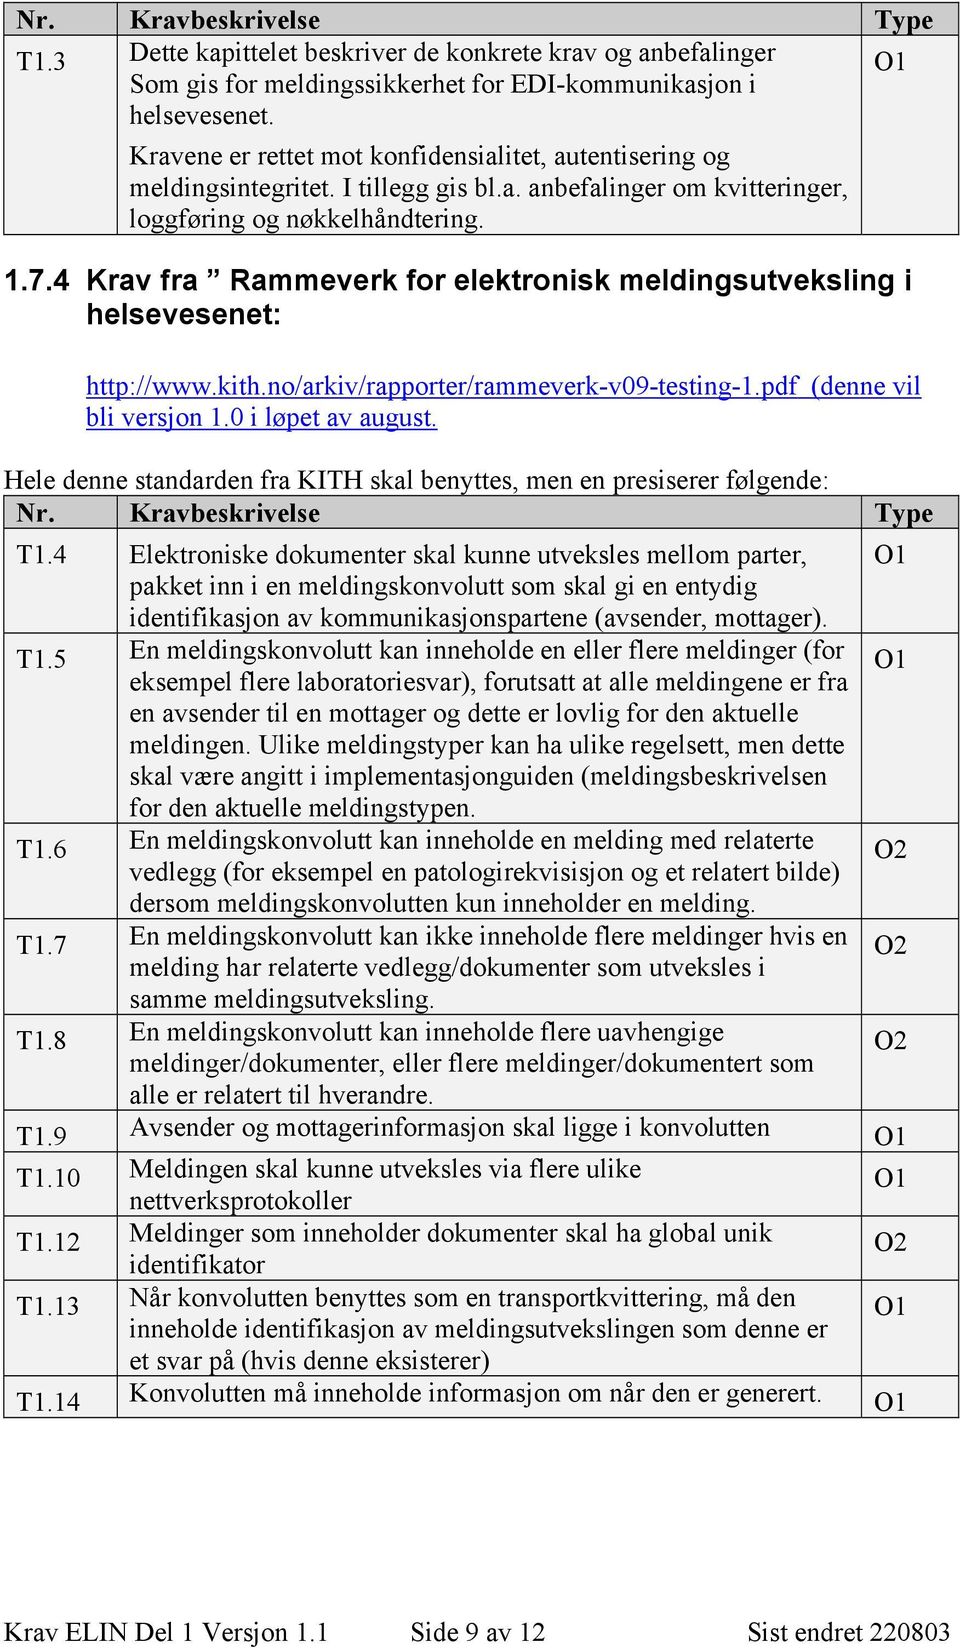 4 Krav fra Rammeverk for elektronisk meldingsutveksling i helsevesenet: http://www.kith.no/arkiv/rapporter/rammeverk-v09-testing-1.pdf (denne vil bli versjon 1.0 i løpet av august.